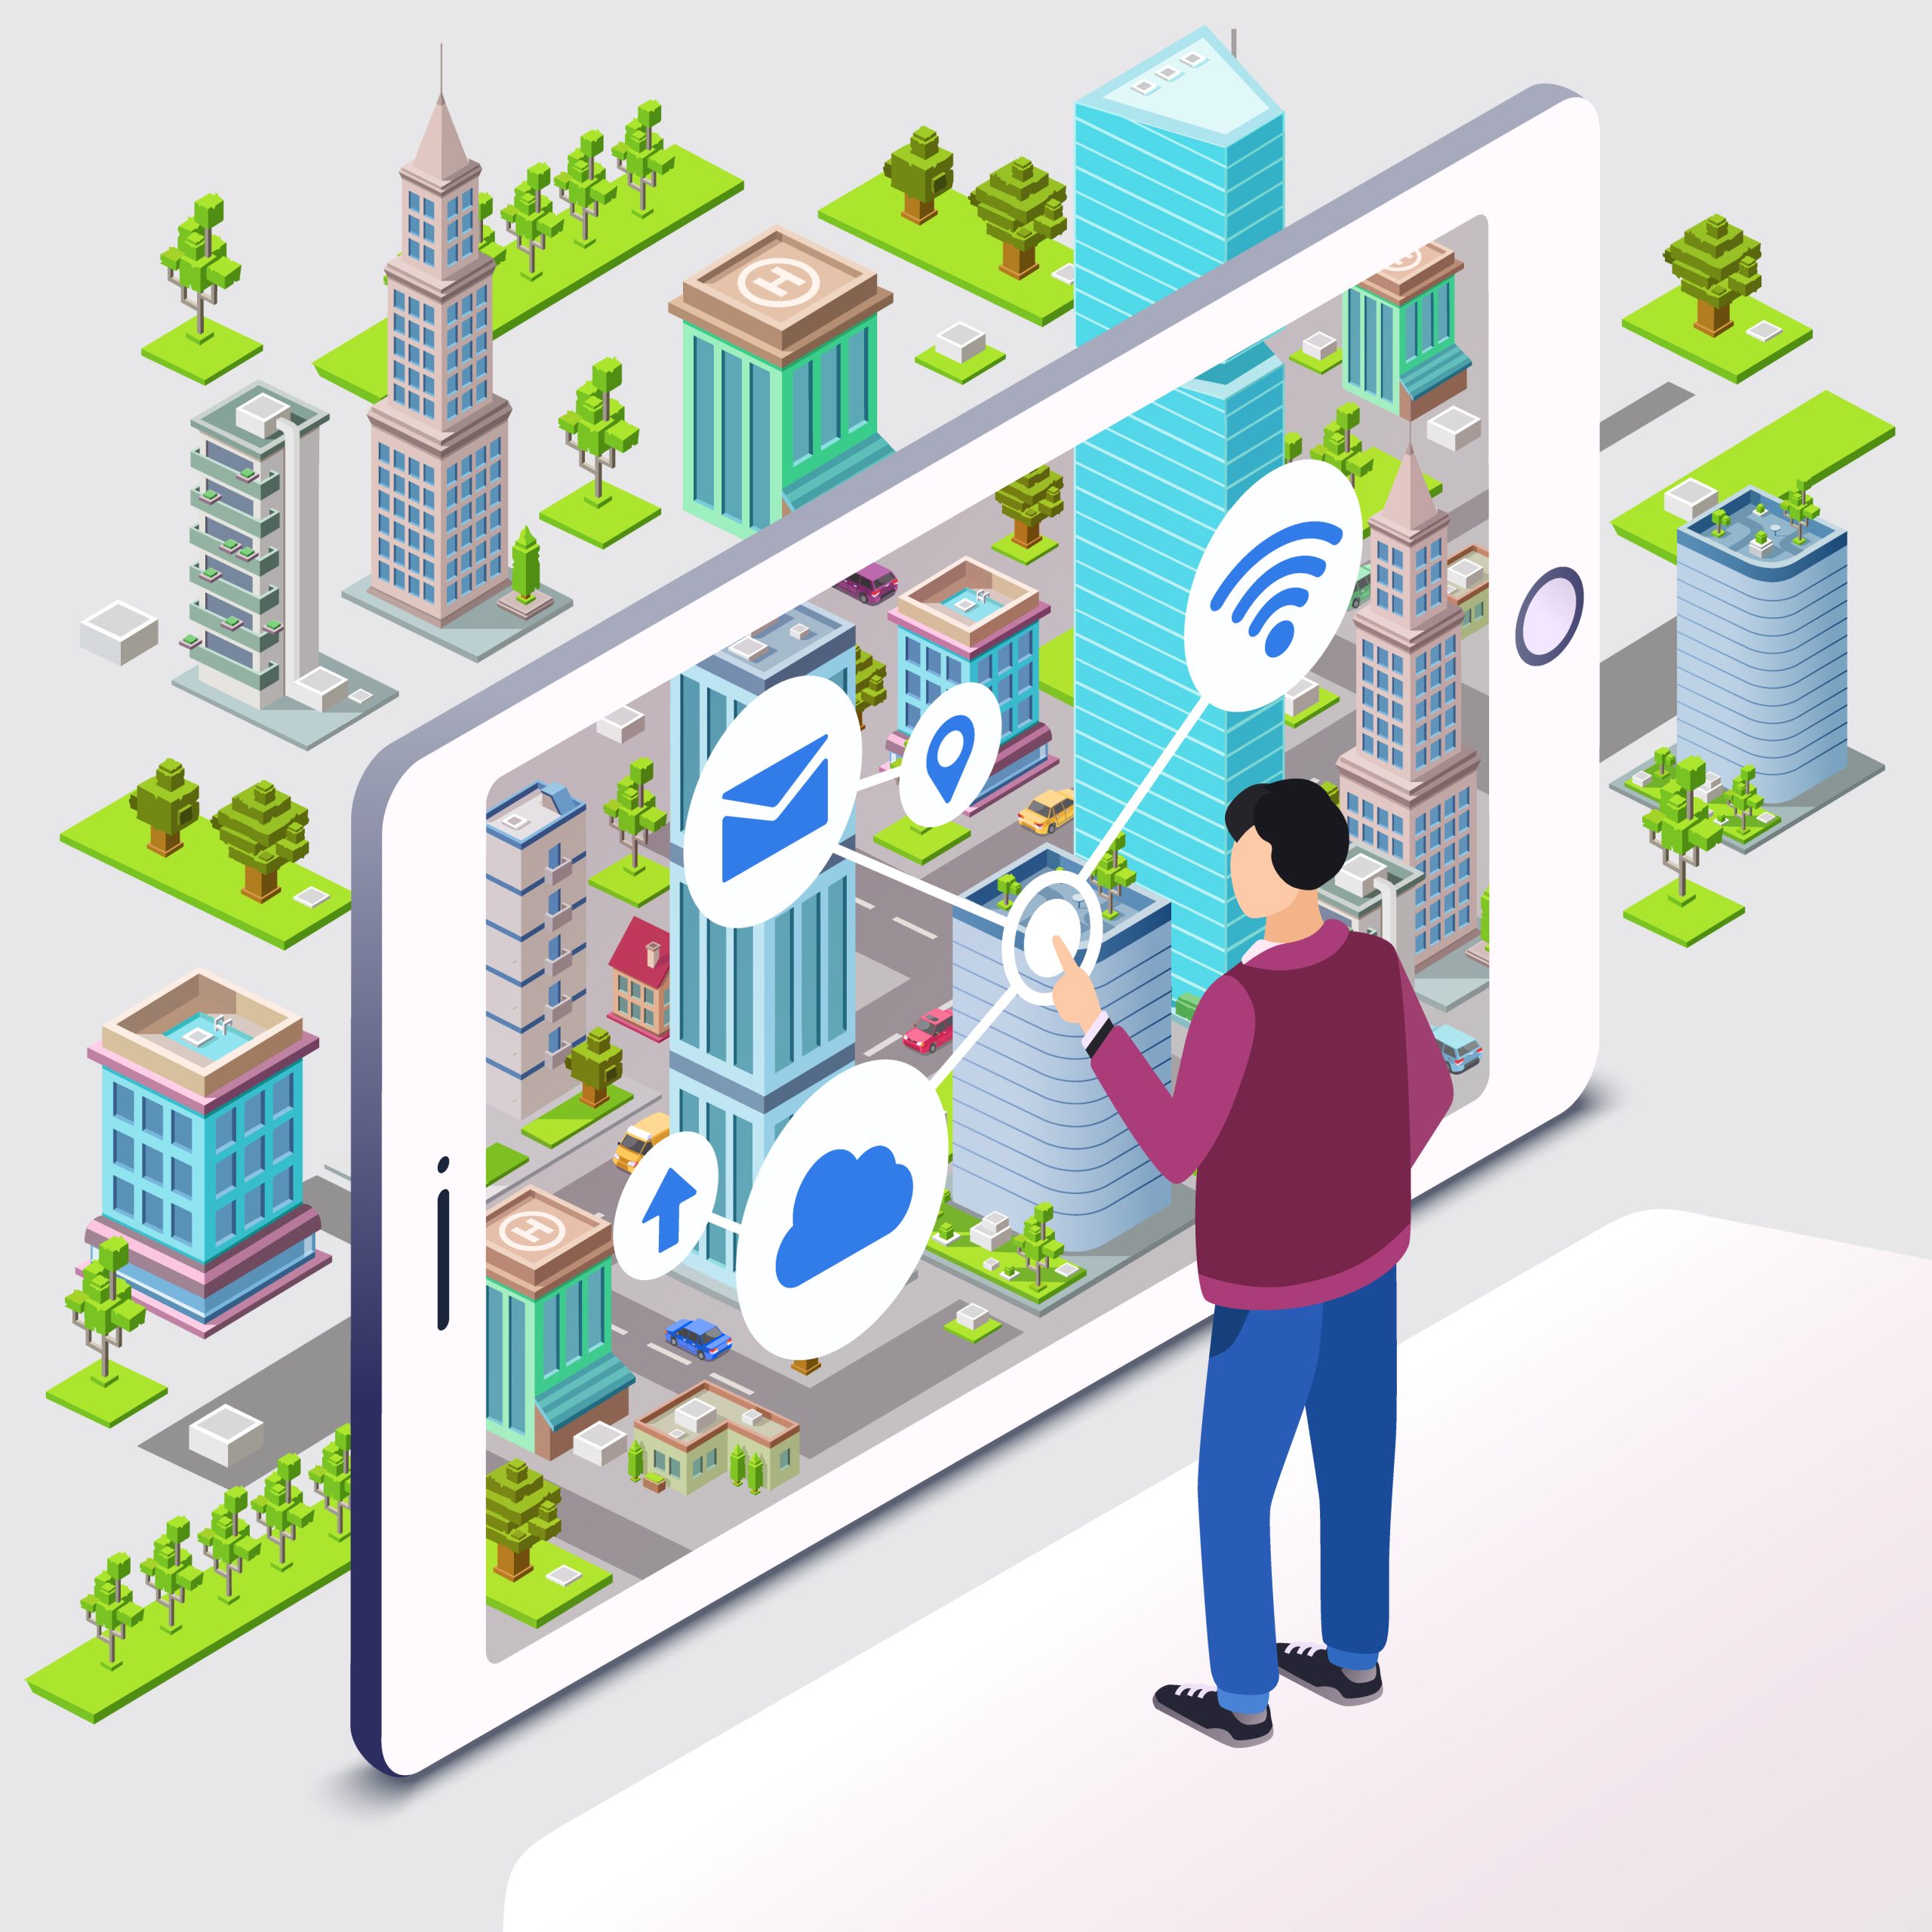 Ilustração de pessoa interagindo em celular gigante, com desenho de smart city na tela.